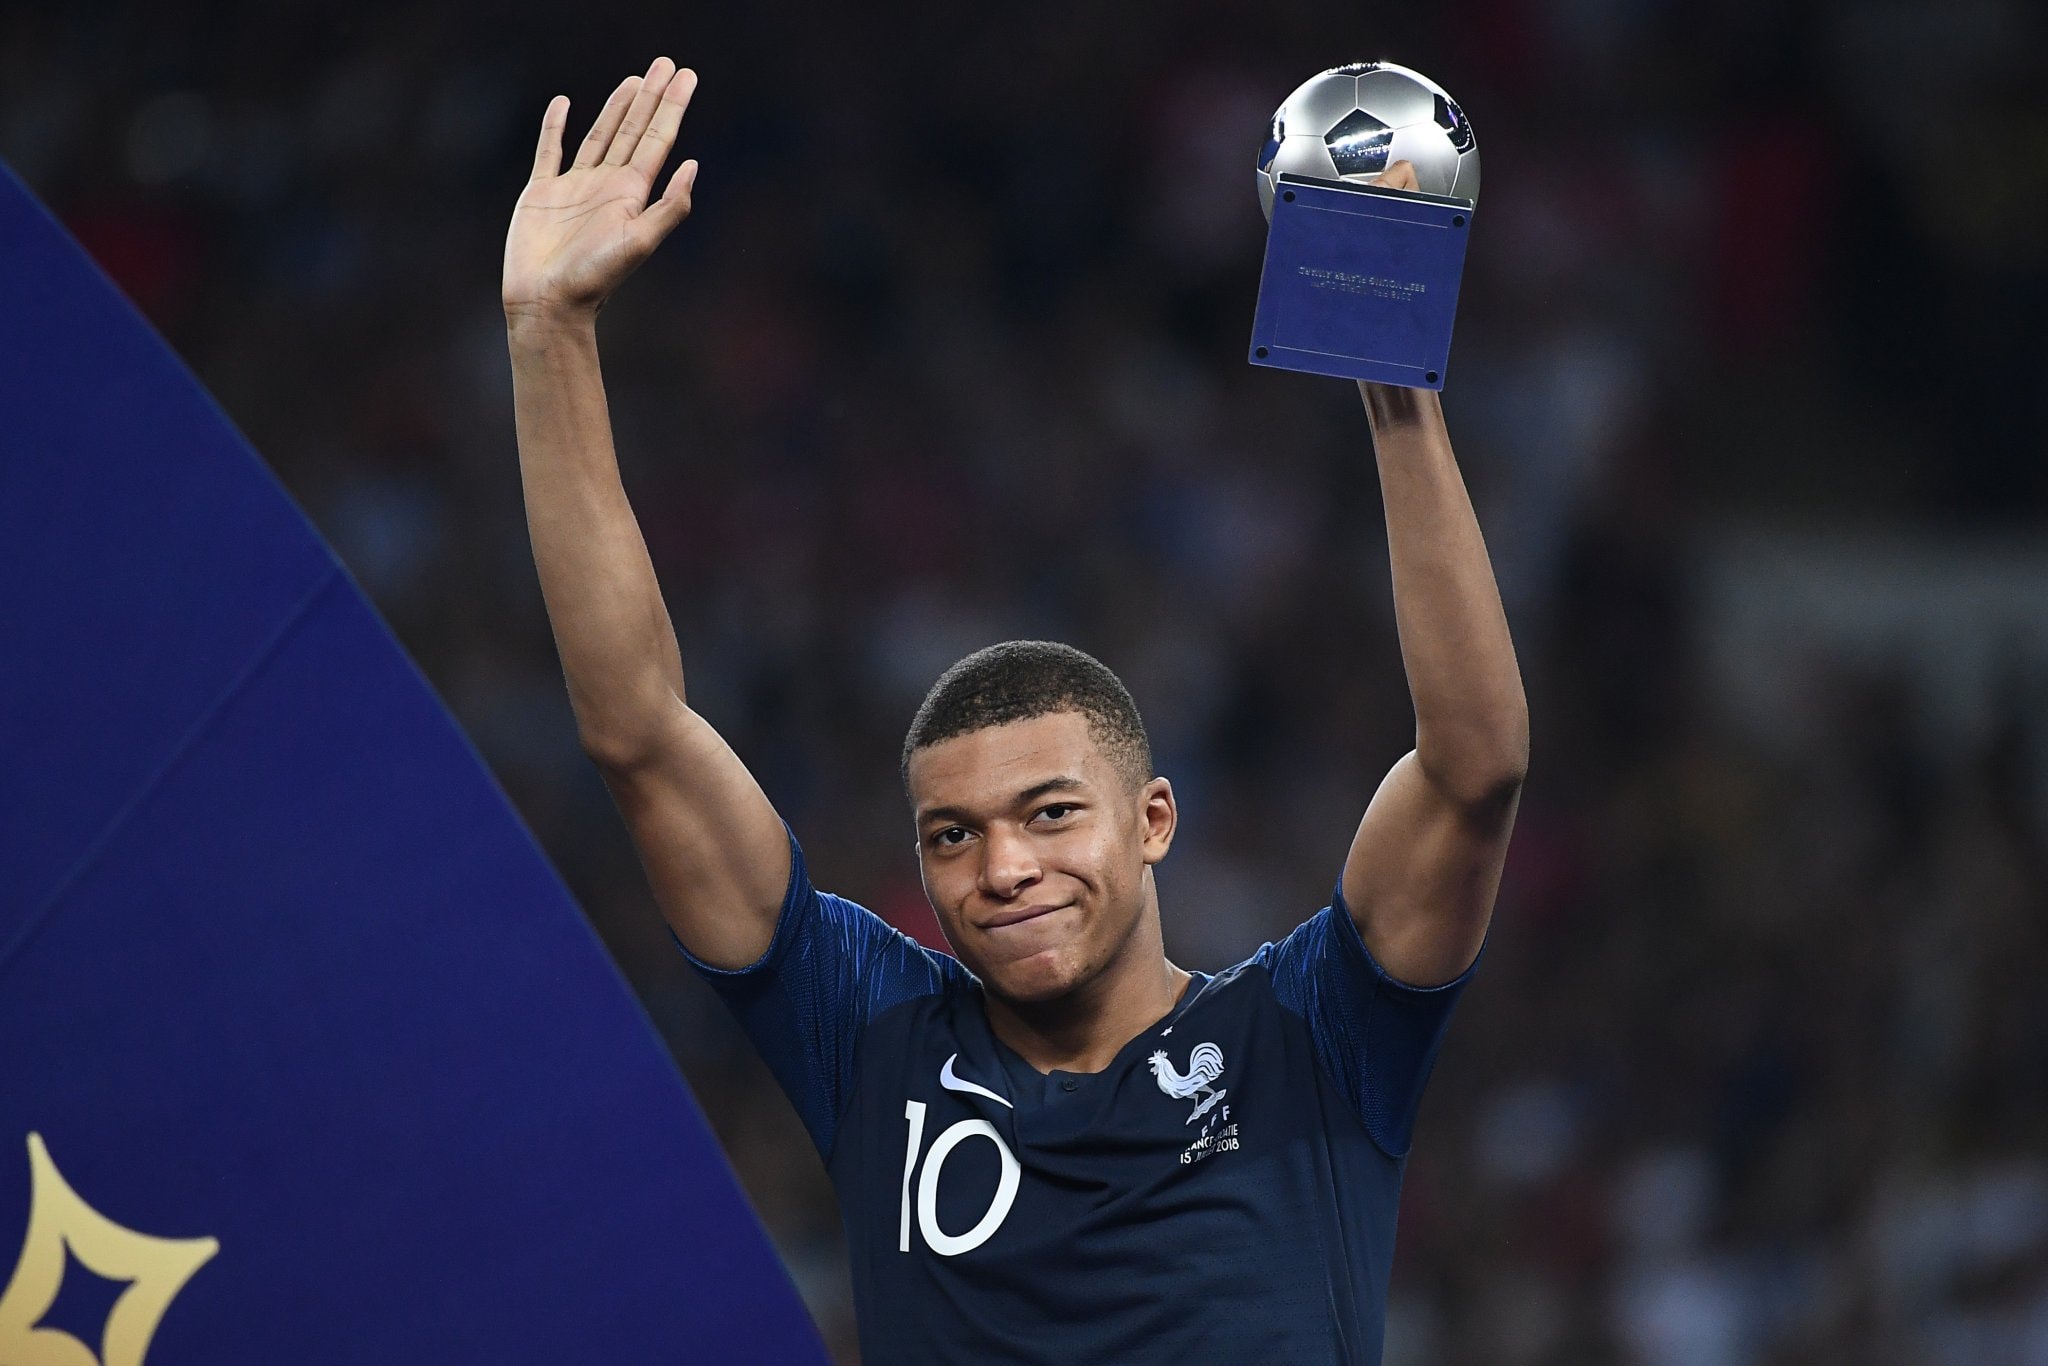 2018 世界盃 − 法國隊人氣前鋒 Kylian Mbappe 奪最佳年輕球員獎